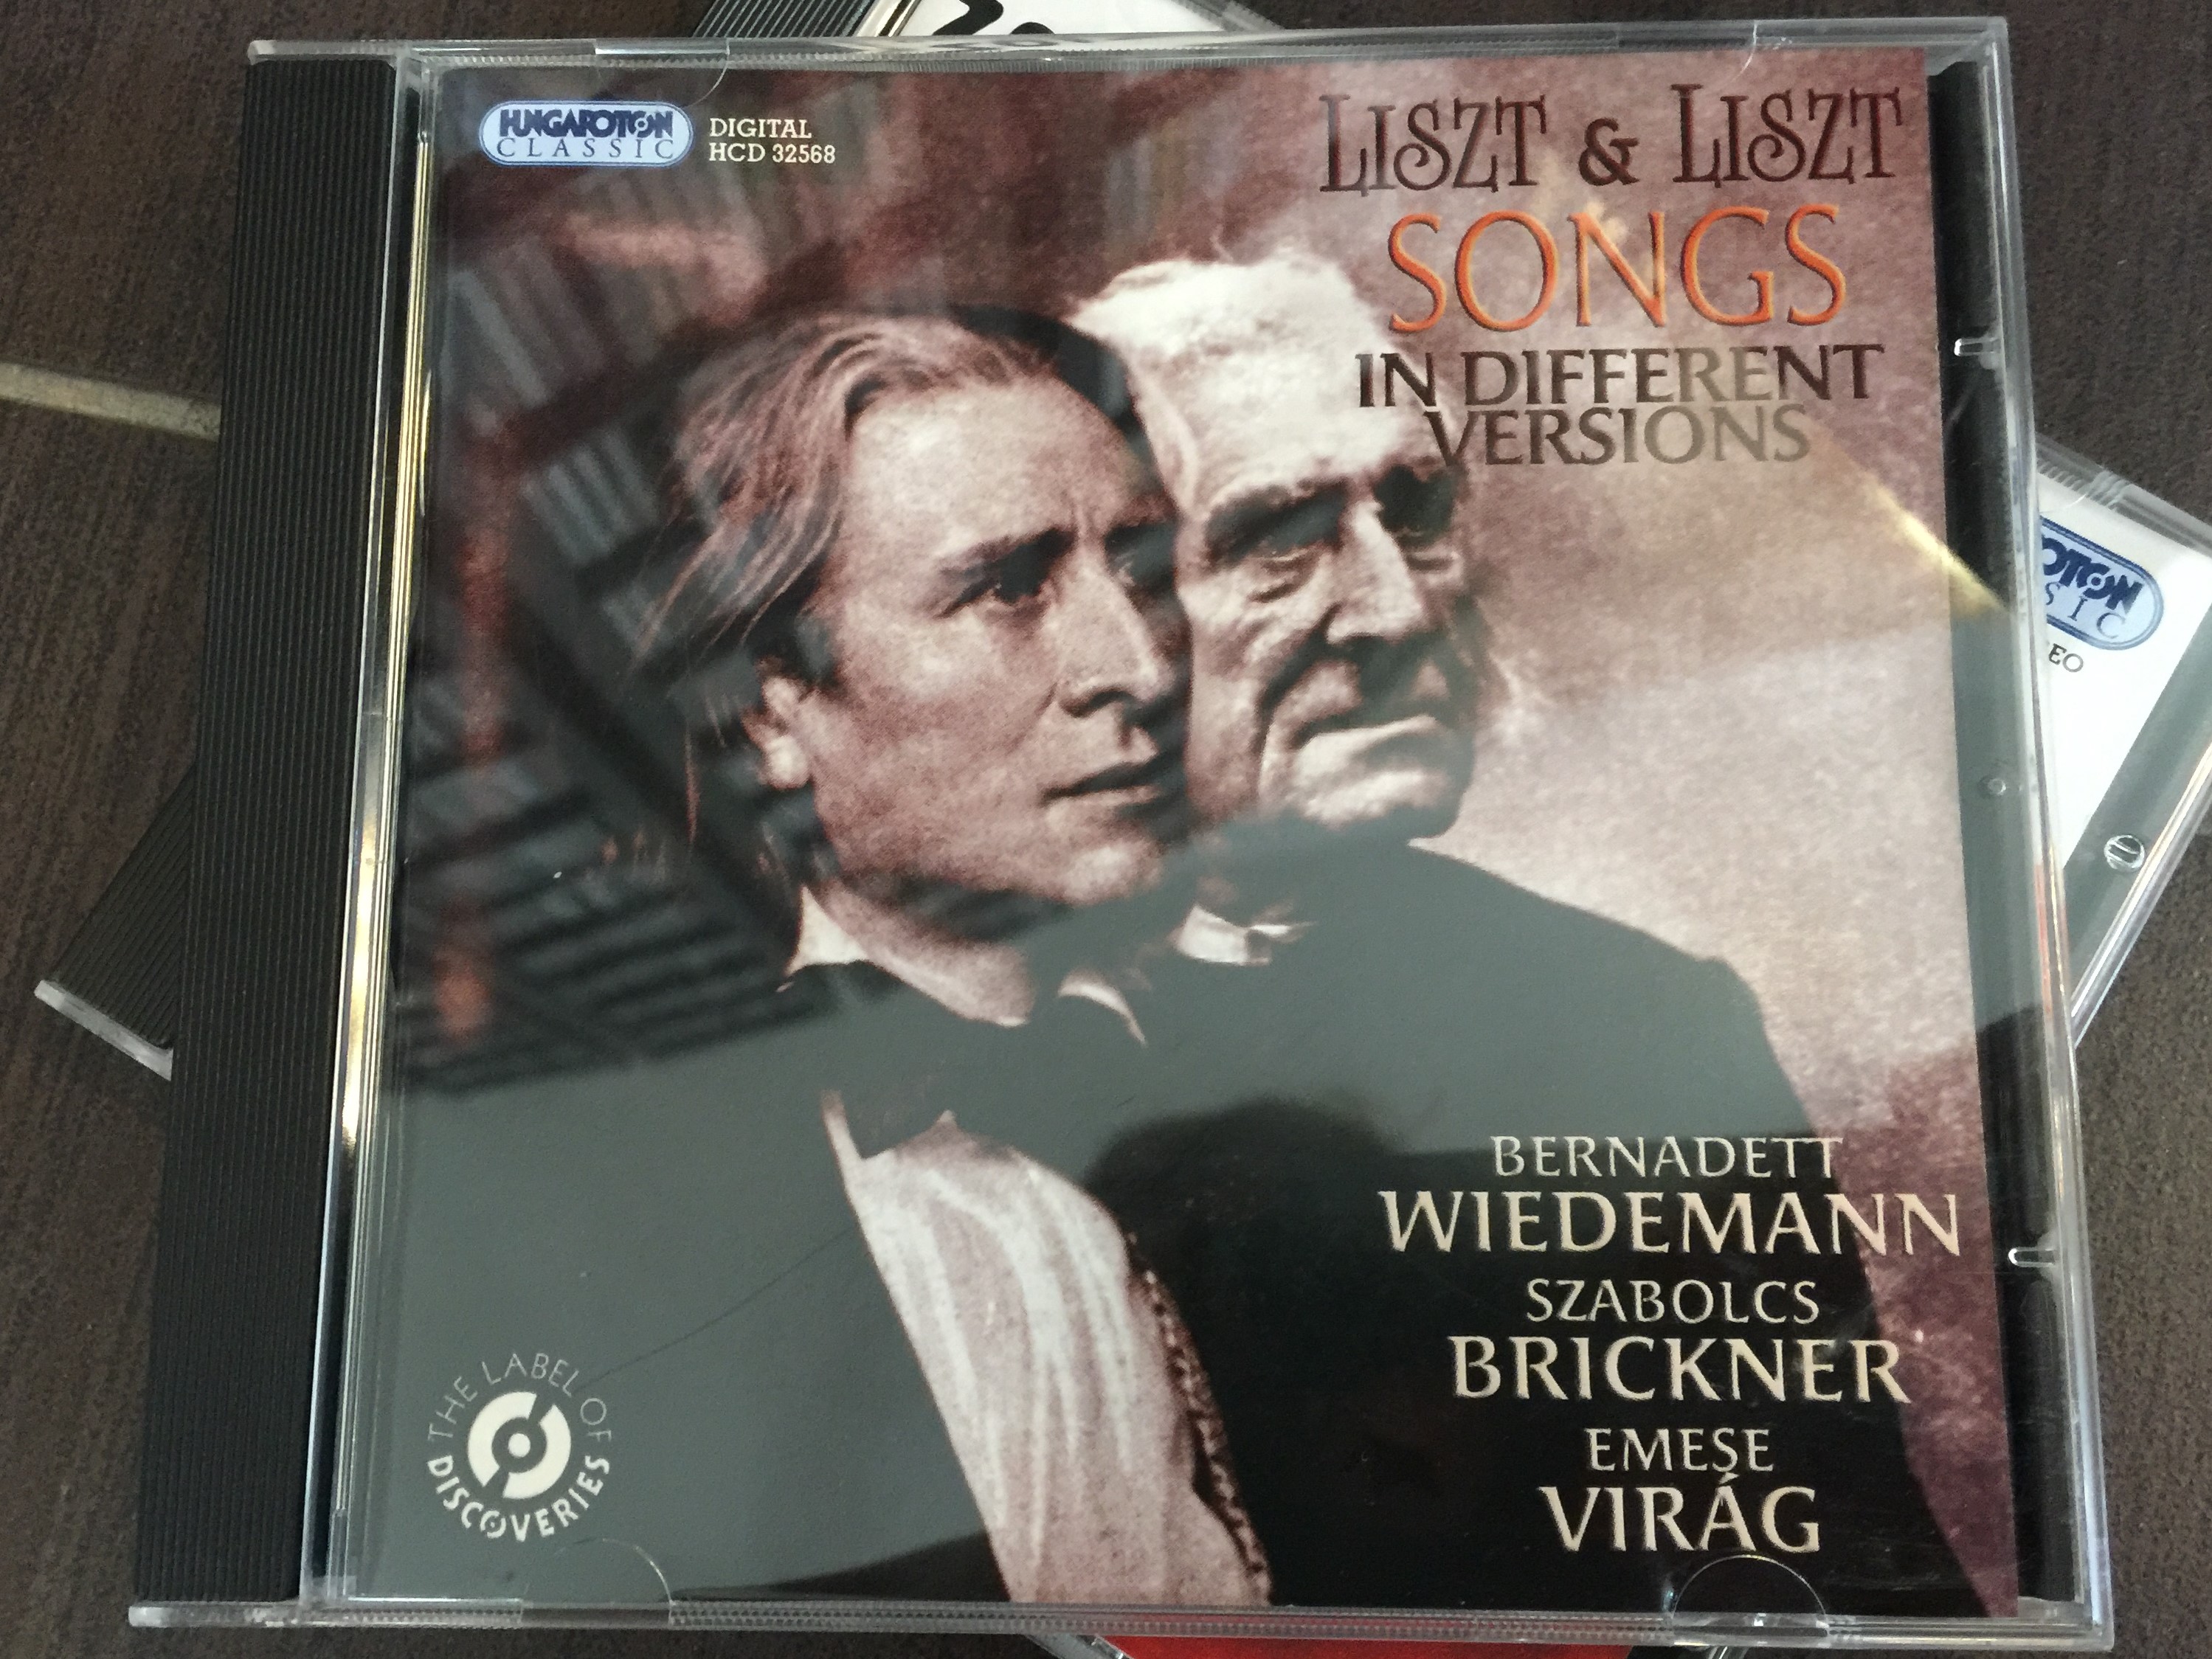 liszt-liszt-songs-in-different-versions-bernadett-wiedemann-szabolcs-brickner-emese-virag-hungaroton-classic-audio-cd-2010-stereo-hcd-32568-1-.jpg